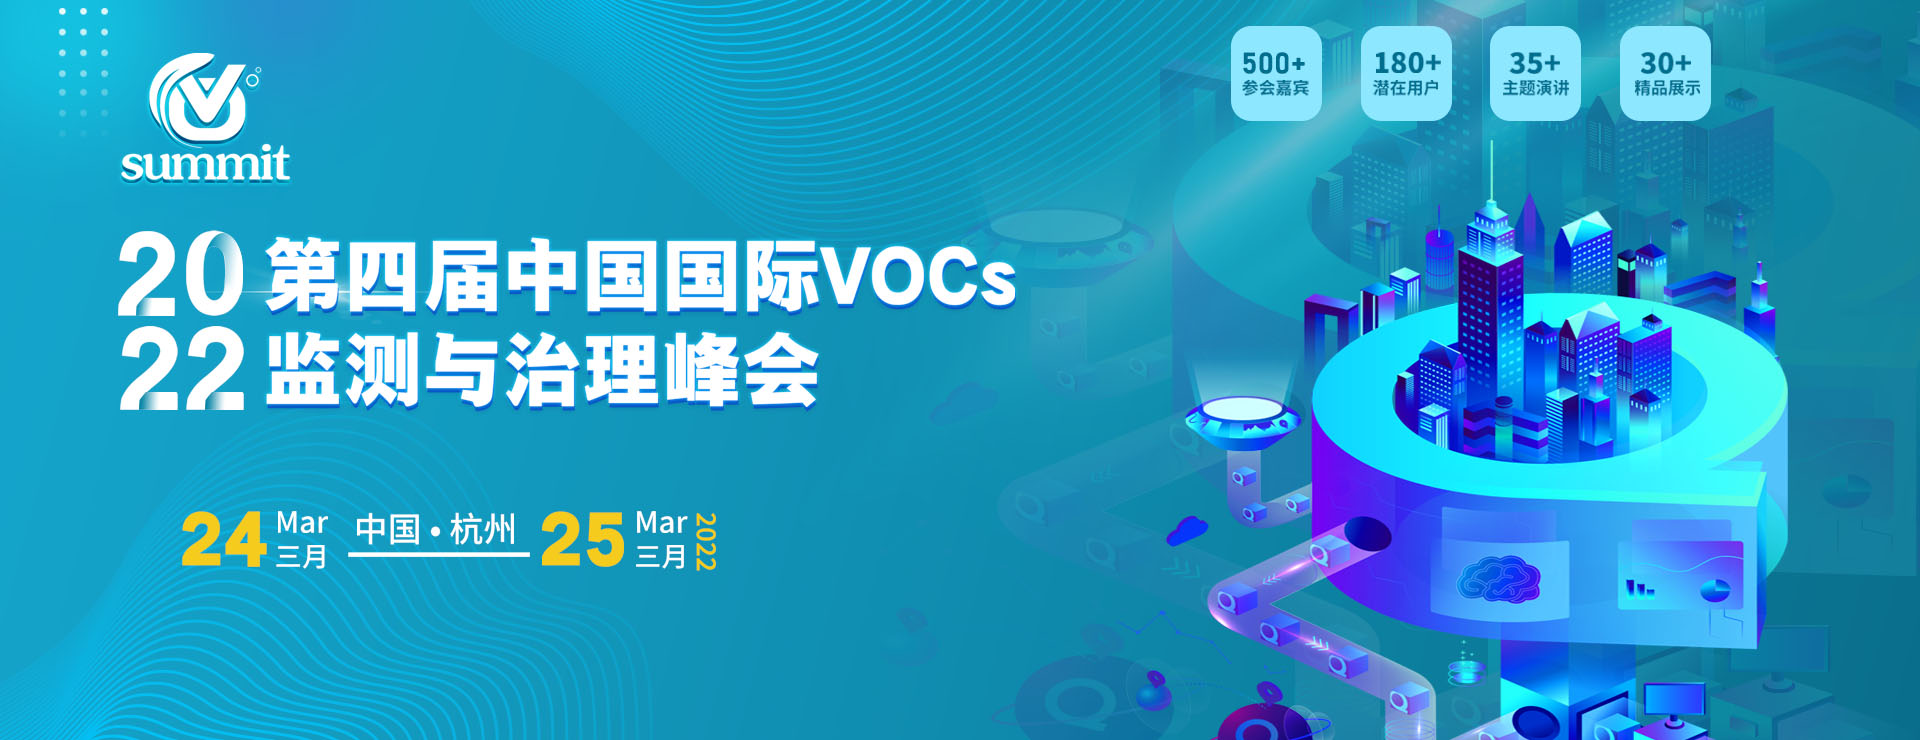 第四届中国国际VOCs 监测与治理创新峰会